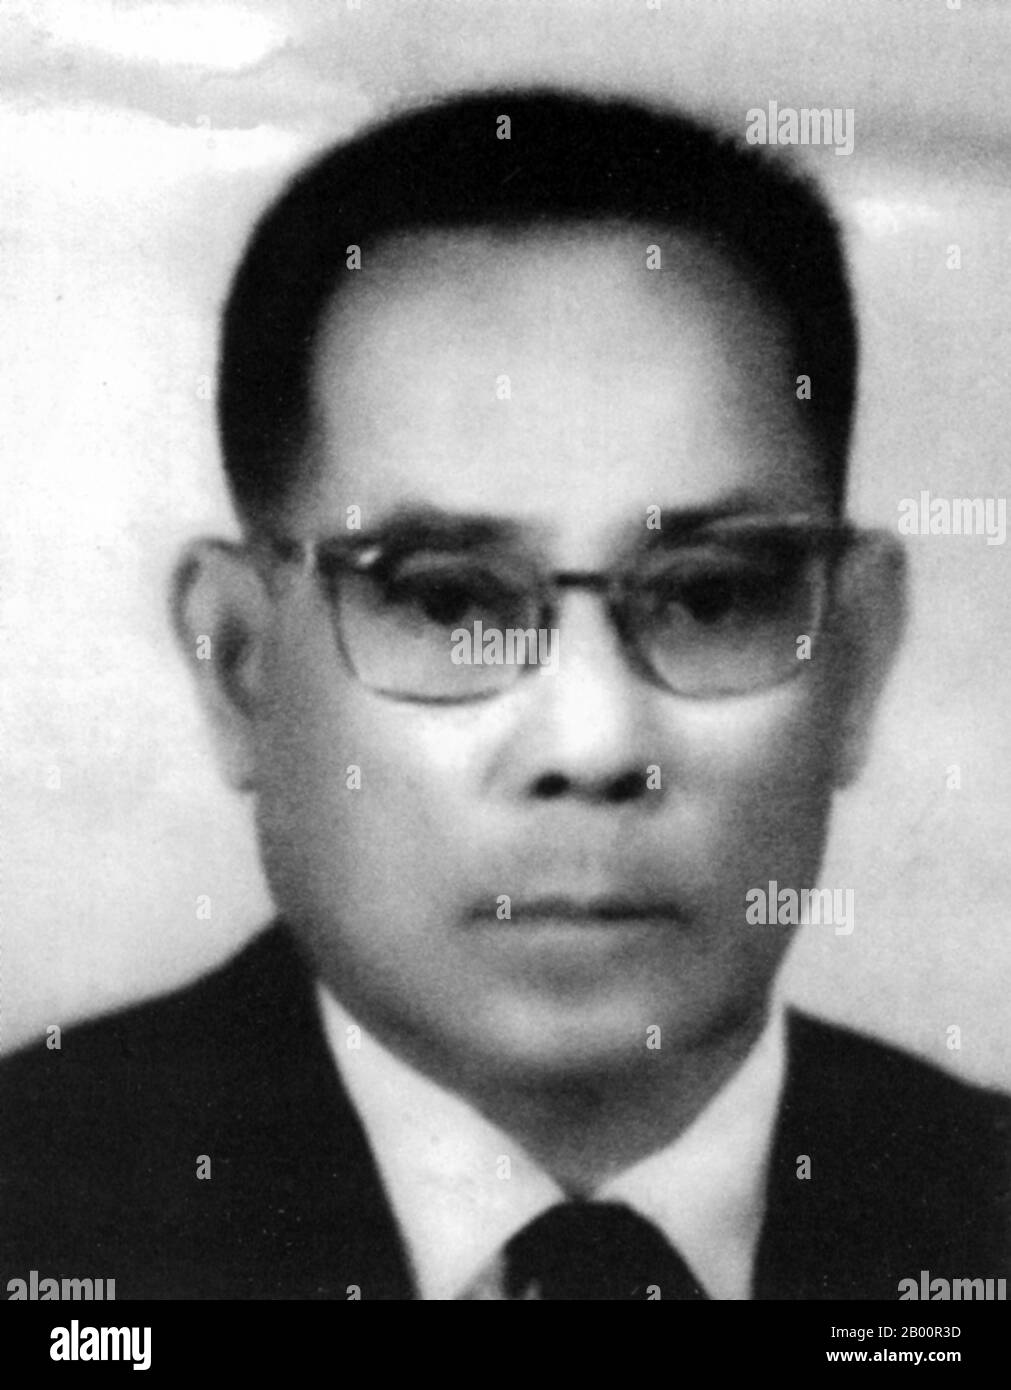 Cambodge: Son Ngoc Thanh (1908–1977) était un politicien républicain et nationaliste cambodgien. Son Ngoc Thanh (1908–1977) était un politicien cambodgien nationaliste et républicain, avec une longue histoire comme rebelle et (pendant de brèves périodes) comme ministre du gouvernement. Il était un adversaire d'arche du roi Norodom Sihanouk, et un anti-communiste. Il est mort en détention au Vietnam en 1977. Banque D'Images